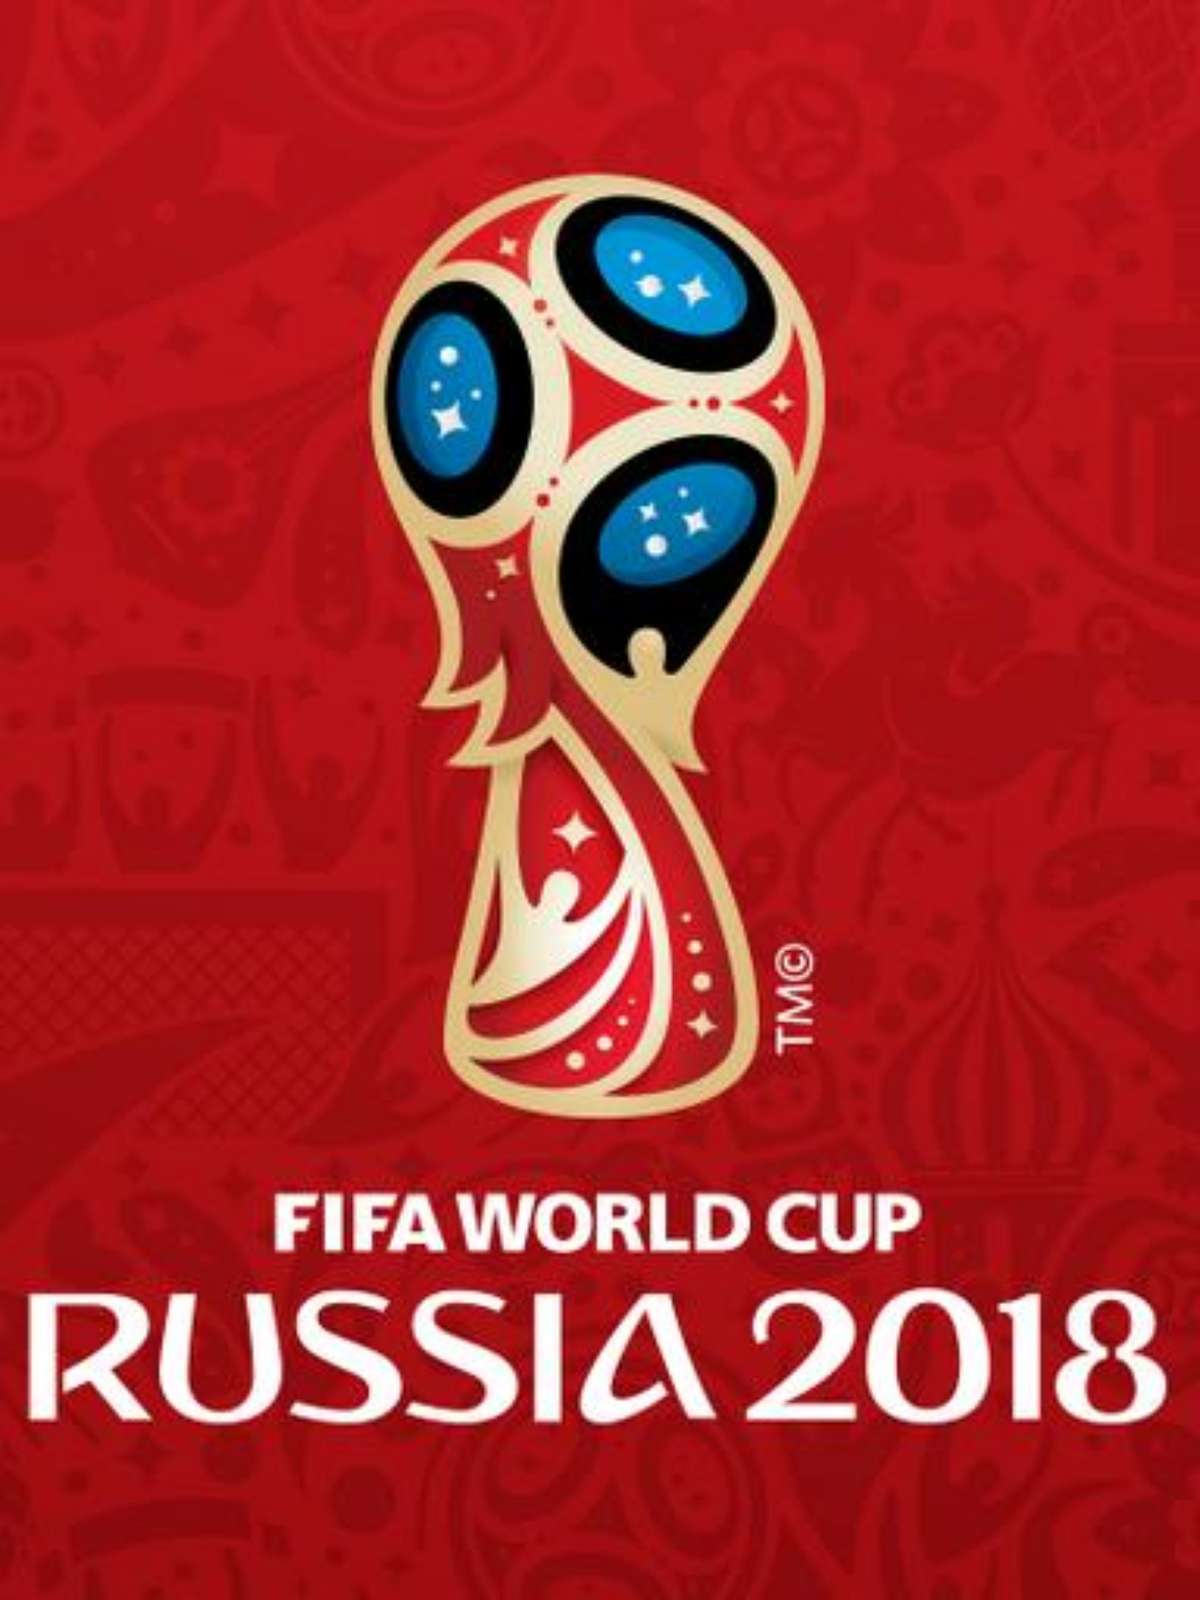 Fifa revela logo da Copa do Mundo de 2018 da Rússia, copa do mundo